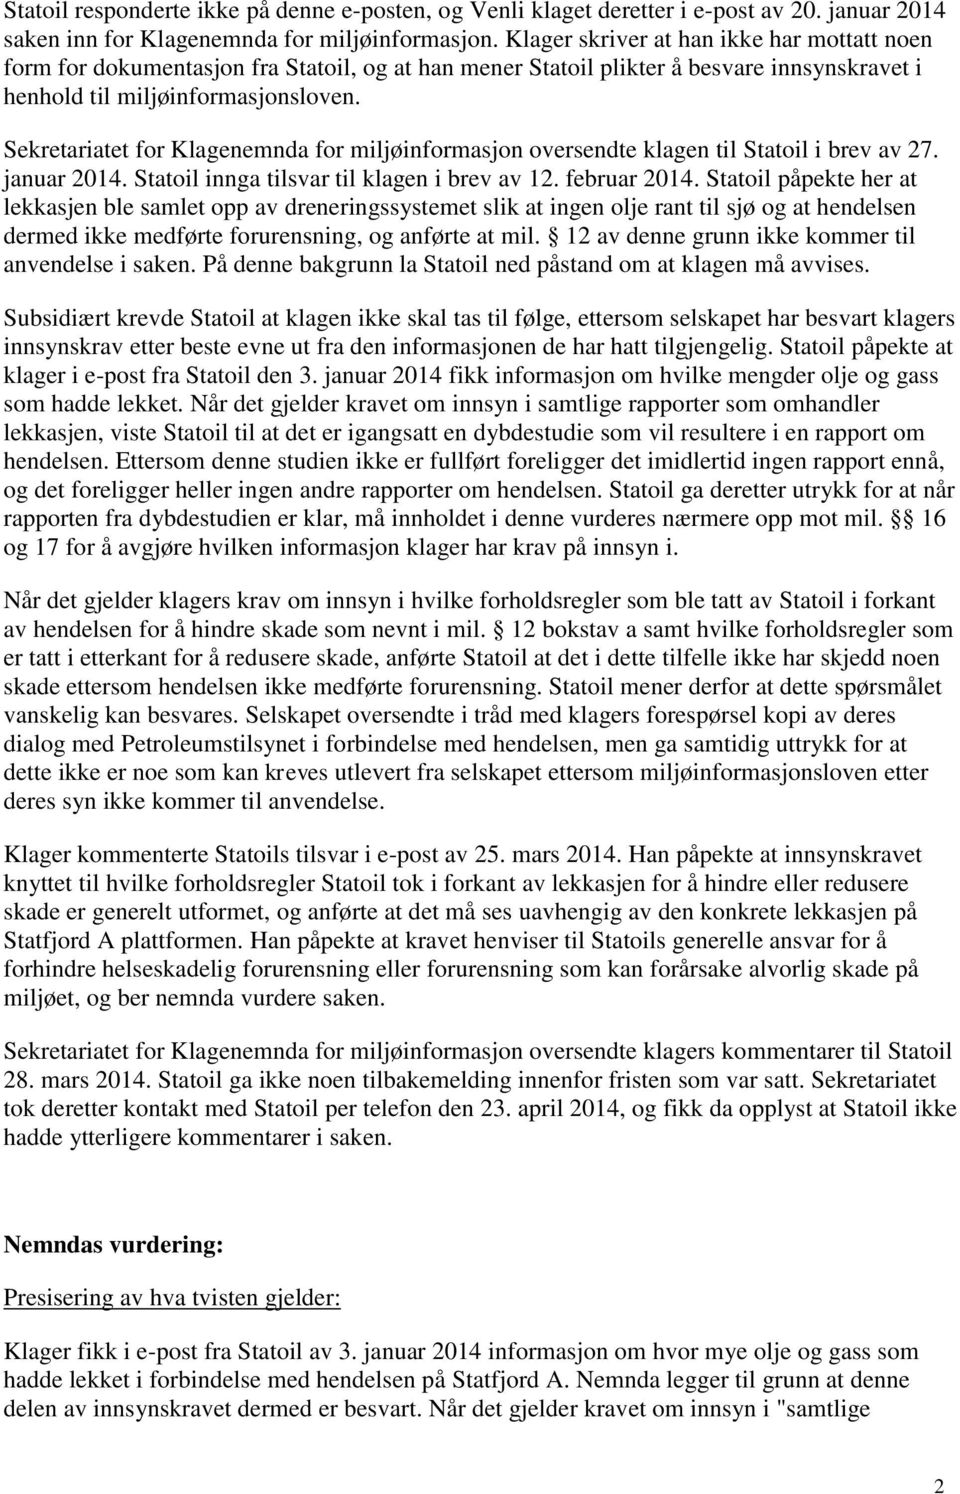 Sekretariatet for Klagenemnda for miljøinformasjon oversendte klagen til Statoil i brev av 27. januar 2014. Statoil innga tilsvar til klagen i brev av 12. februar 2014.